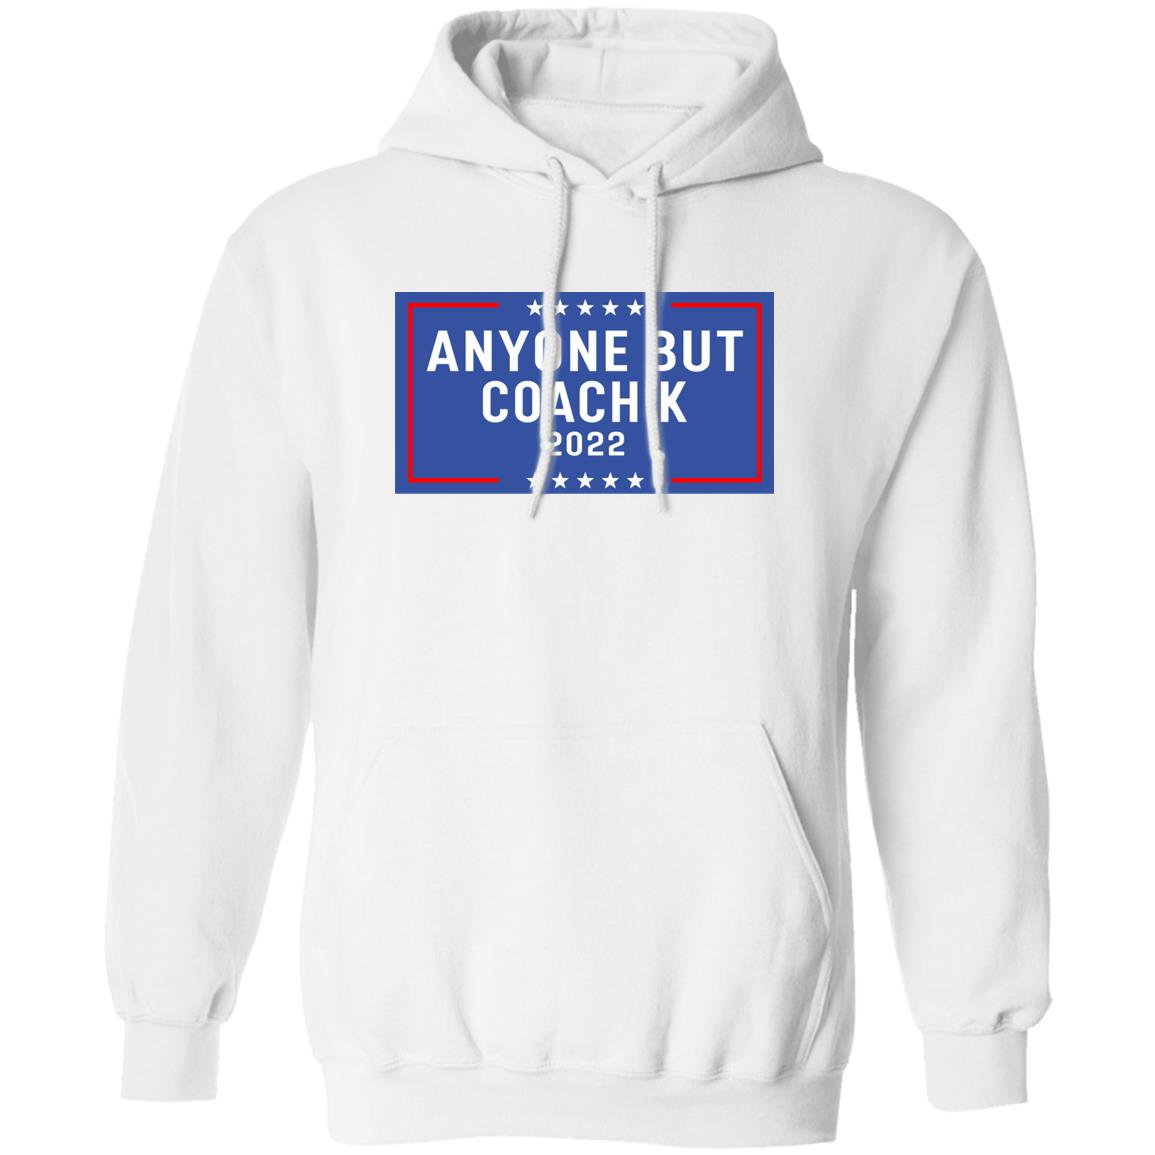 Anyone But Coach K 2022 Shirt 2